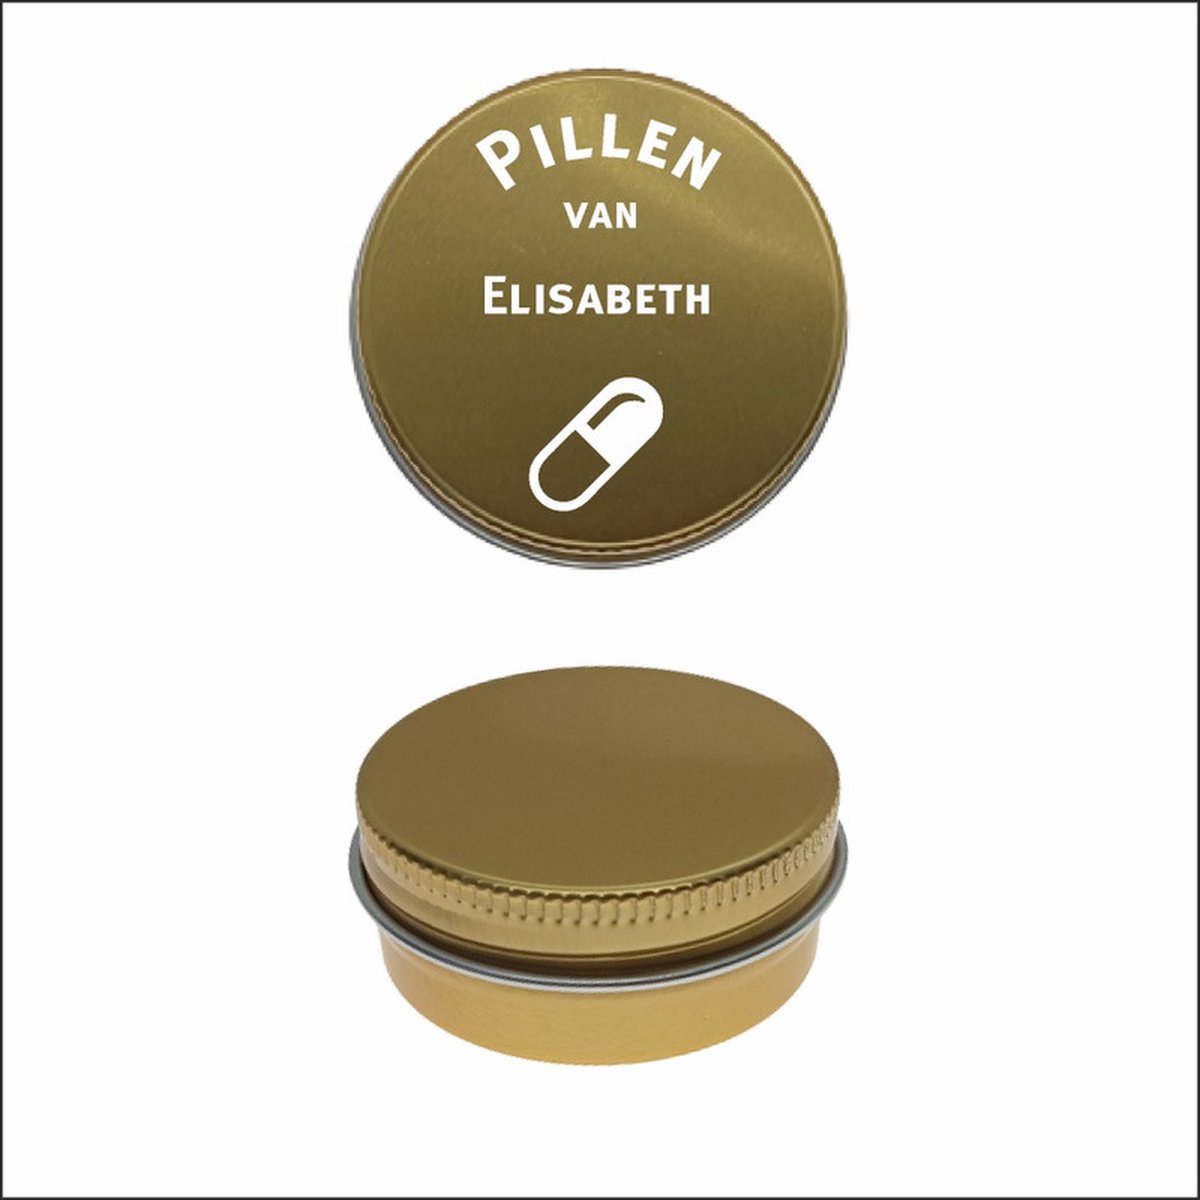 Pillen Blikje Met Naam Gravering - Elisabeth